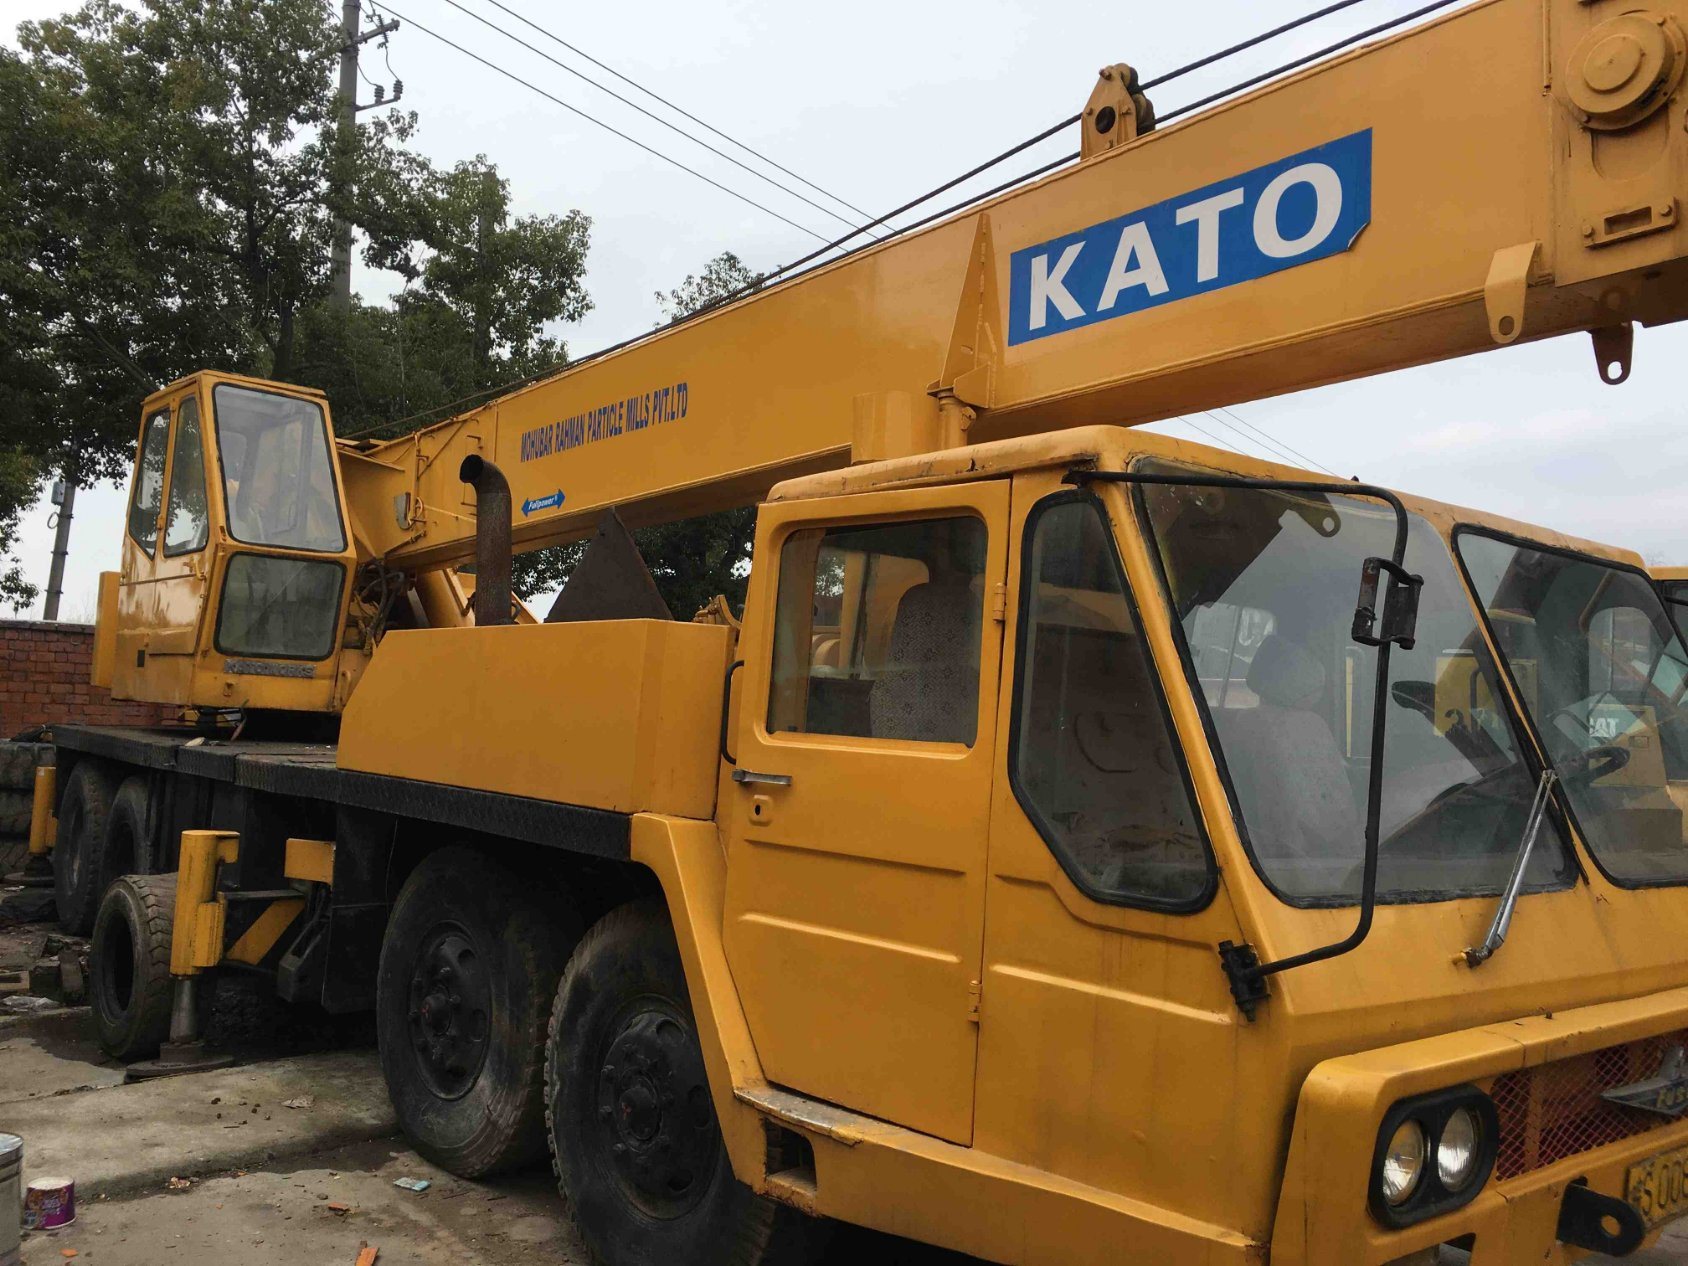 
                Usato Kato 40t Gru terreno accidentato con buone condizioni in Prezzo conveniente
            